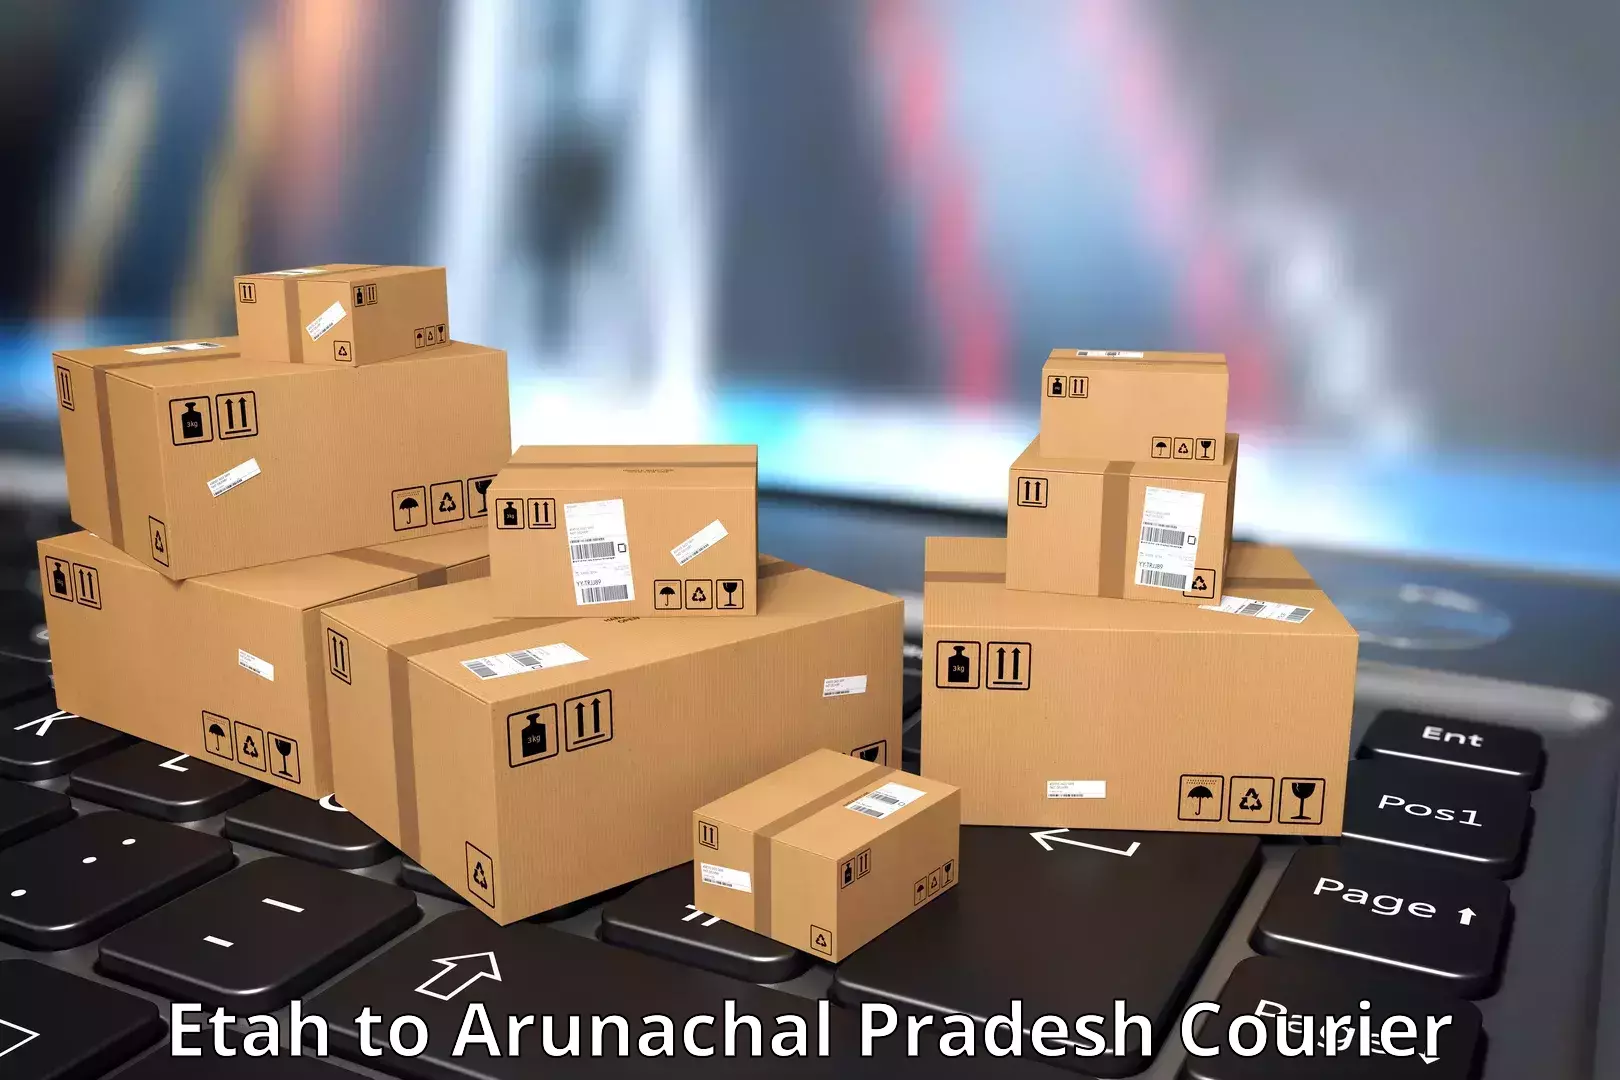 24-hour courier service Etah to Arunachal Pradesh